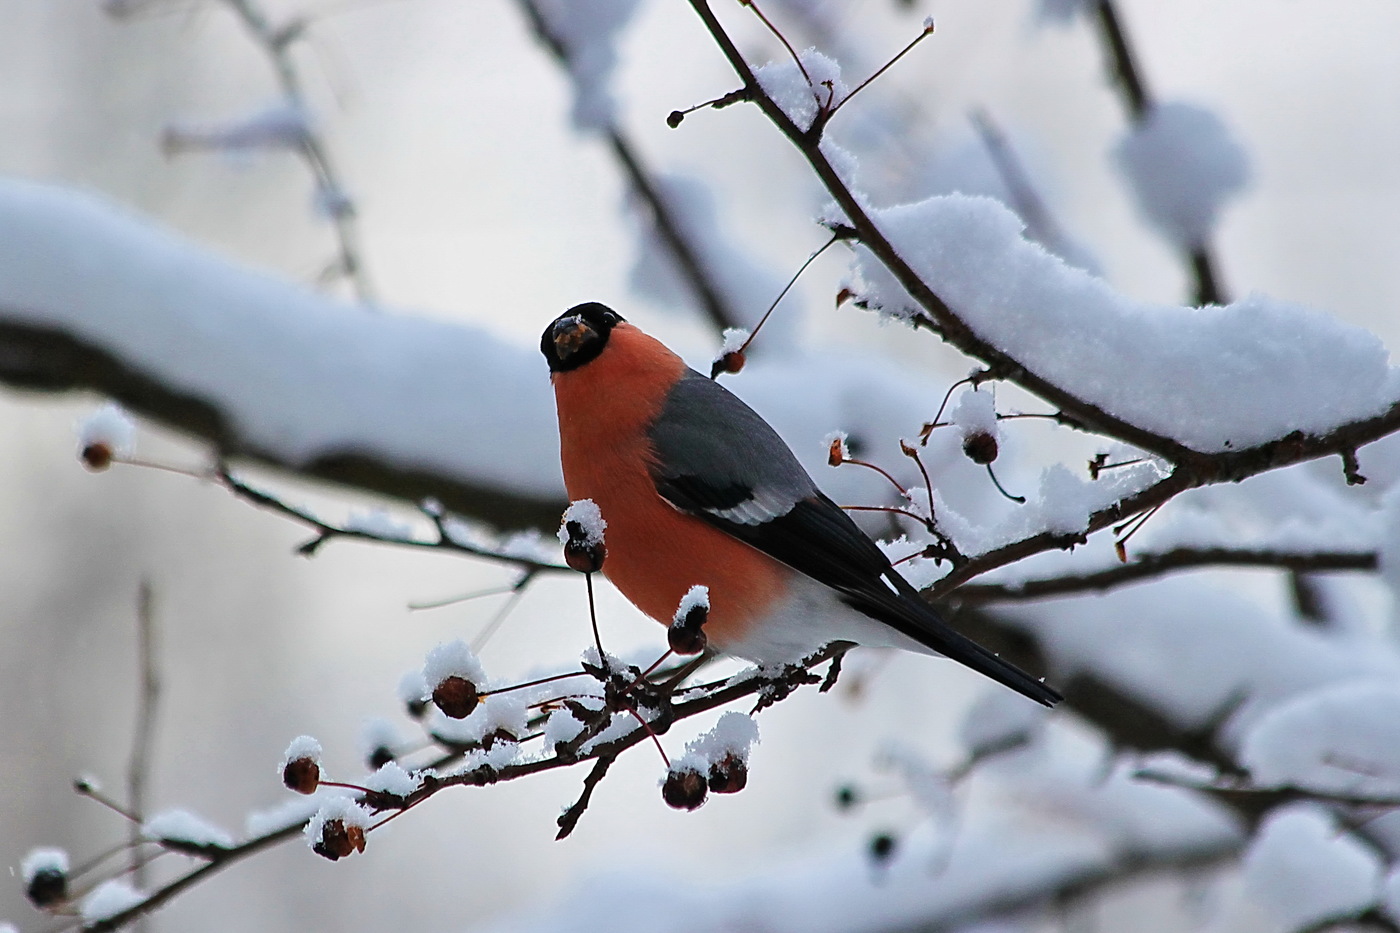 Bullfinch in winter